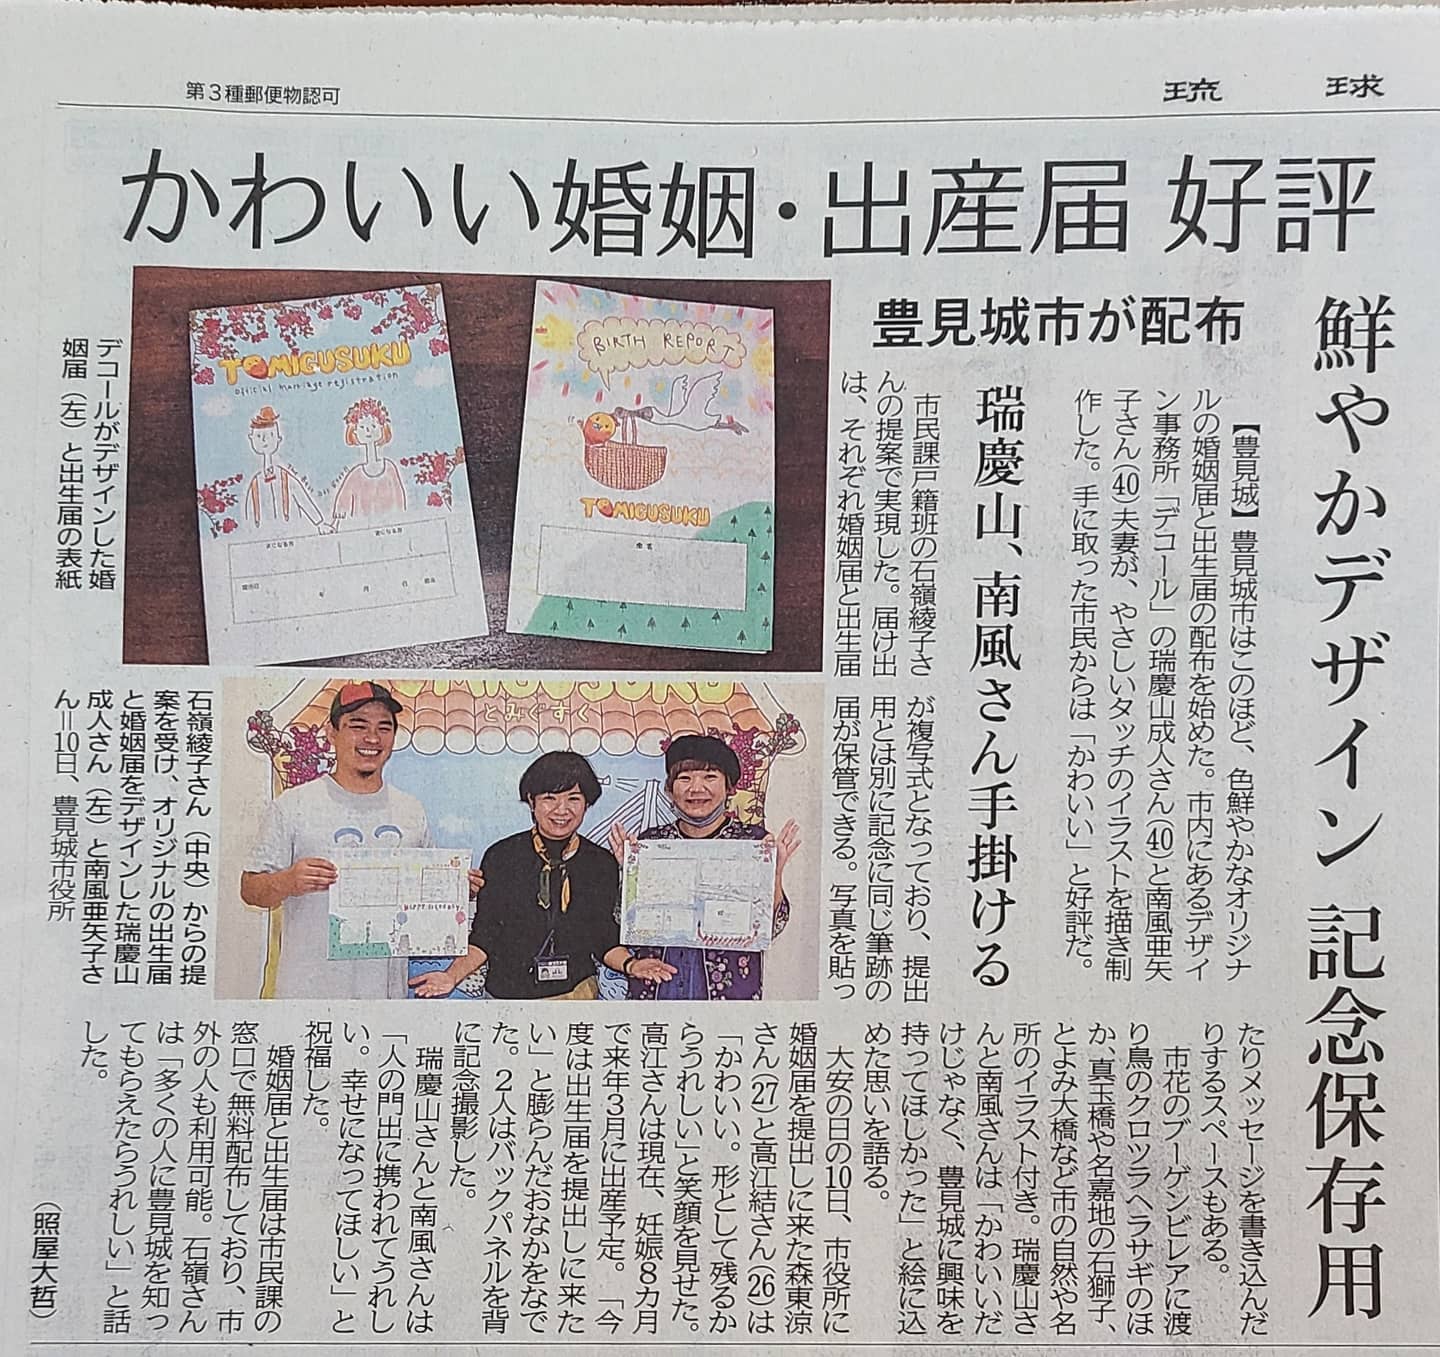 豊見城市の婚姻届と出生届のことが琉球新報に掲載されました。